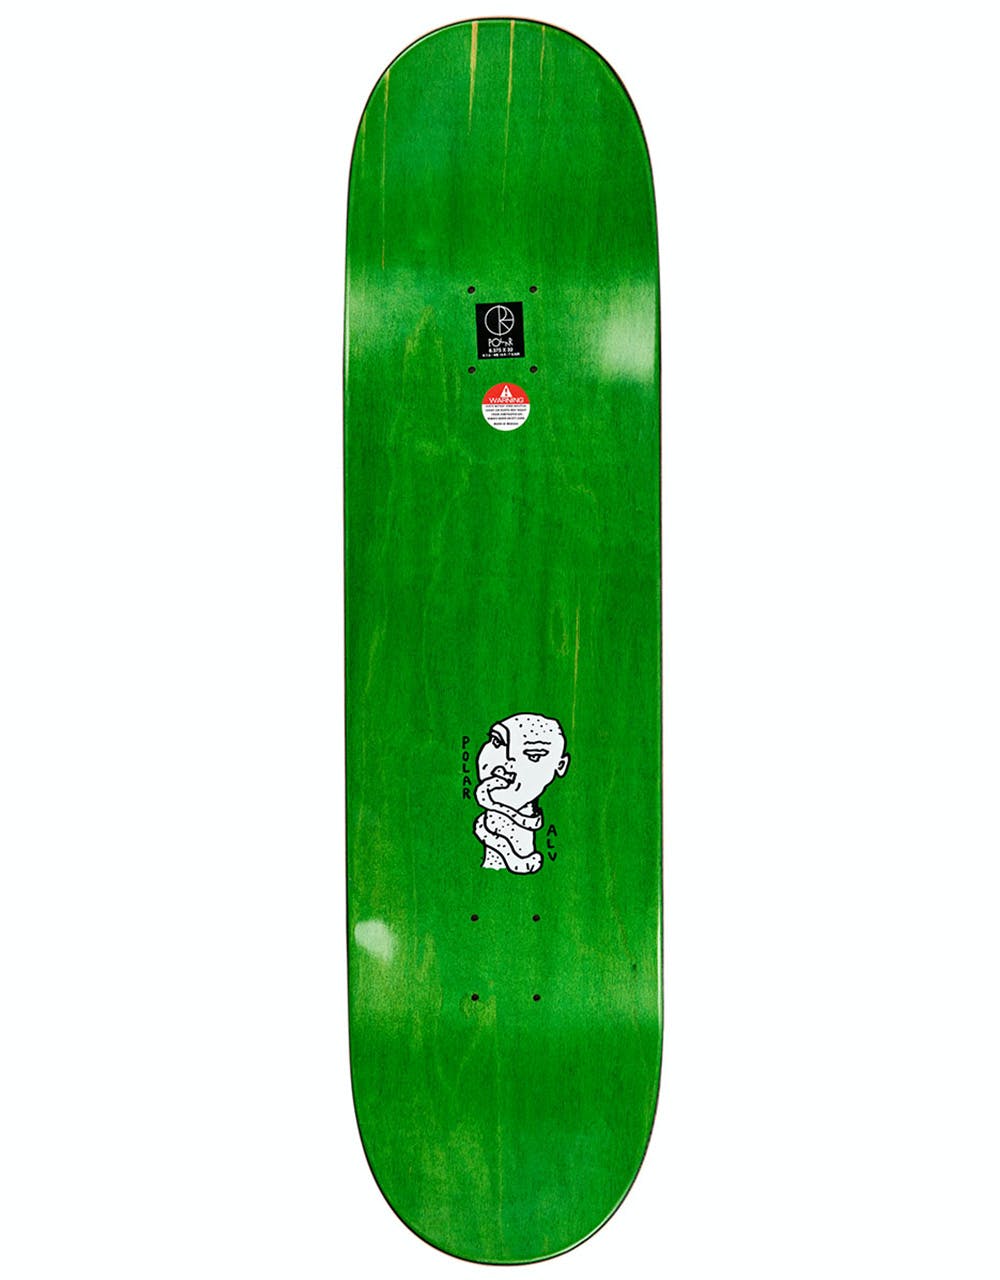 Polar Kind of Nice Skateboard Deck - 8.38"